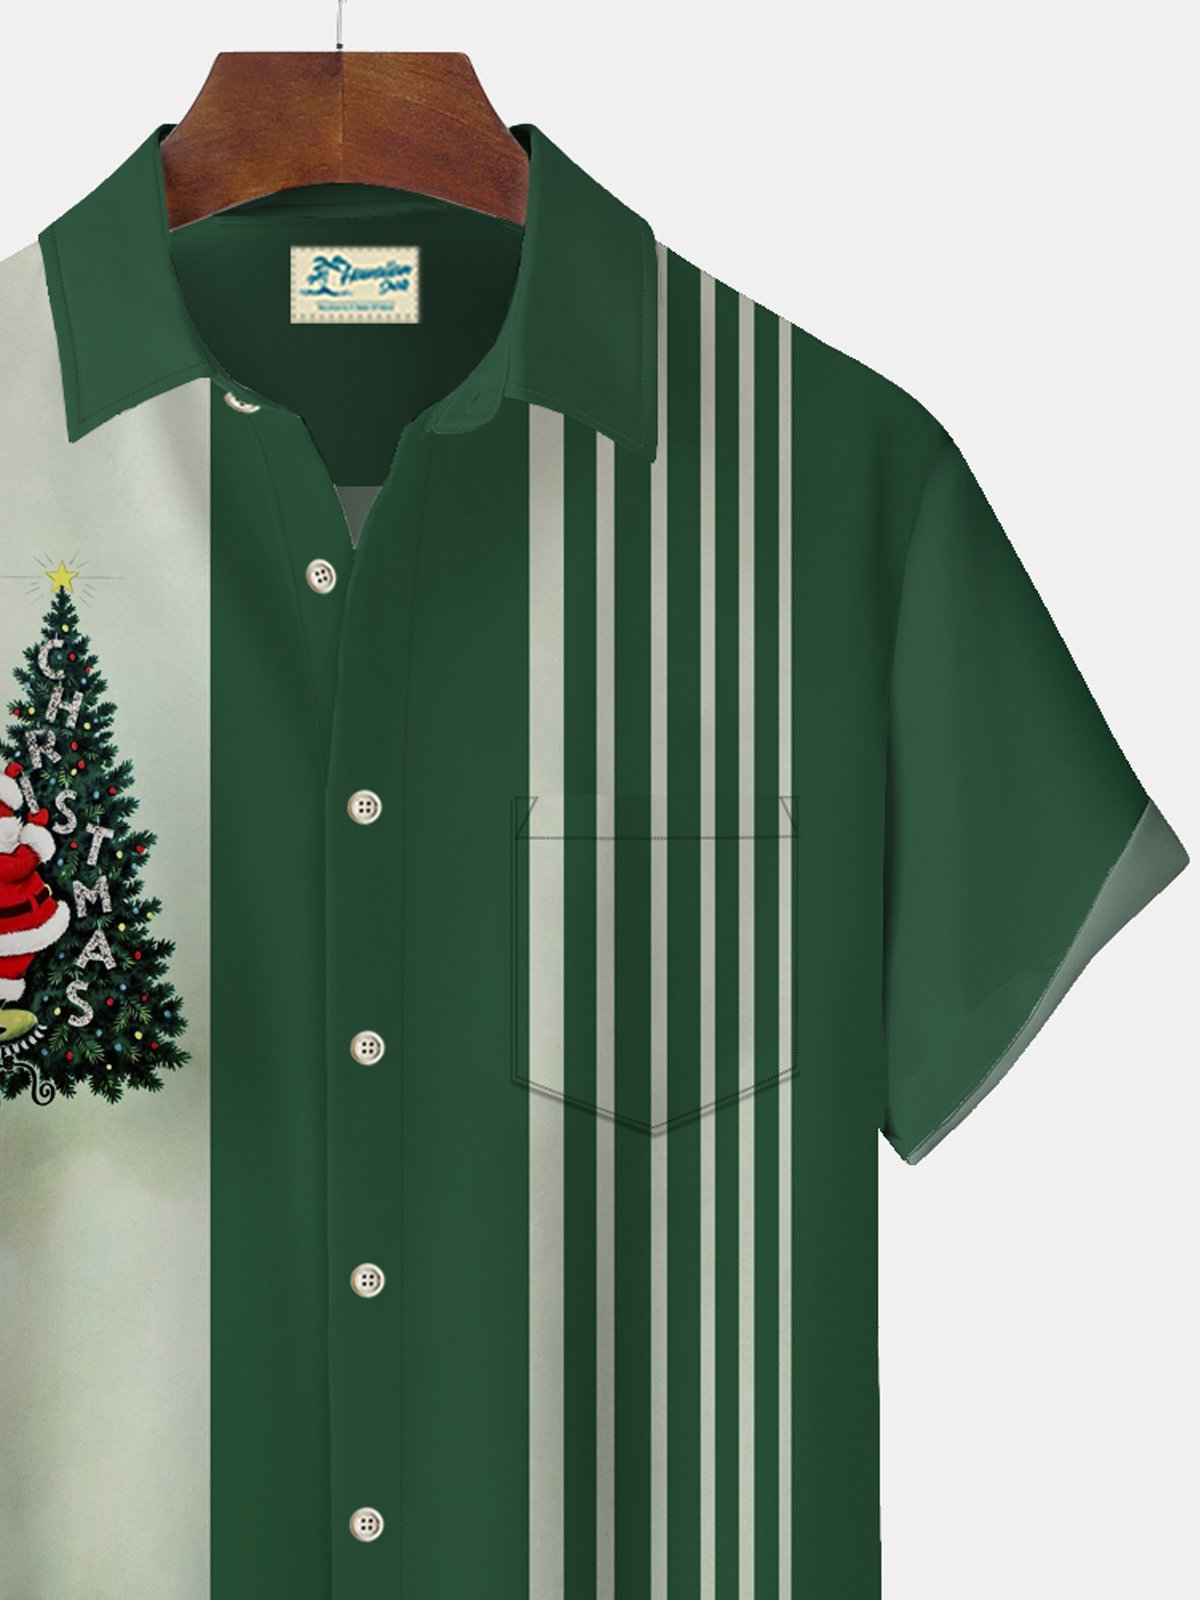 Royaura Christmas Holiday Green Men's Bowling Shirt Christmas Tree Cartoon Stretch Casual Camp Pocket Button Santa Shirts